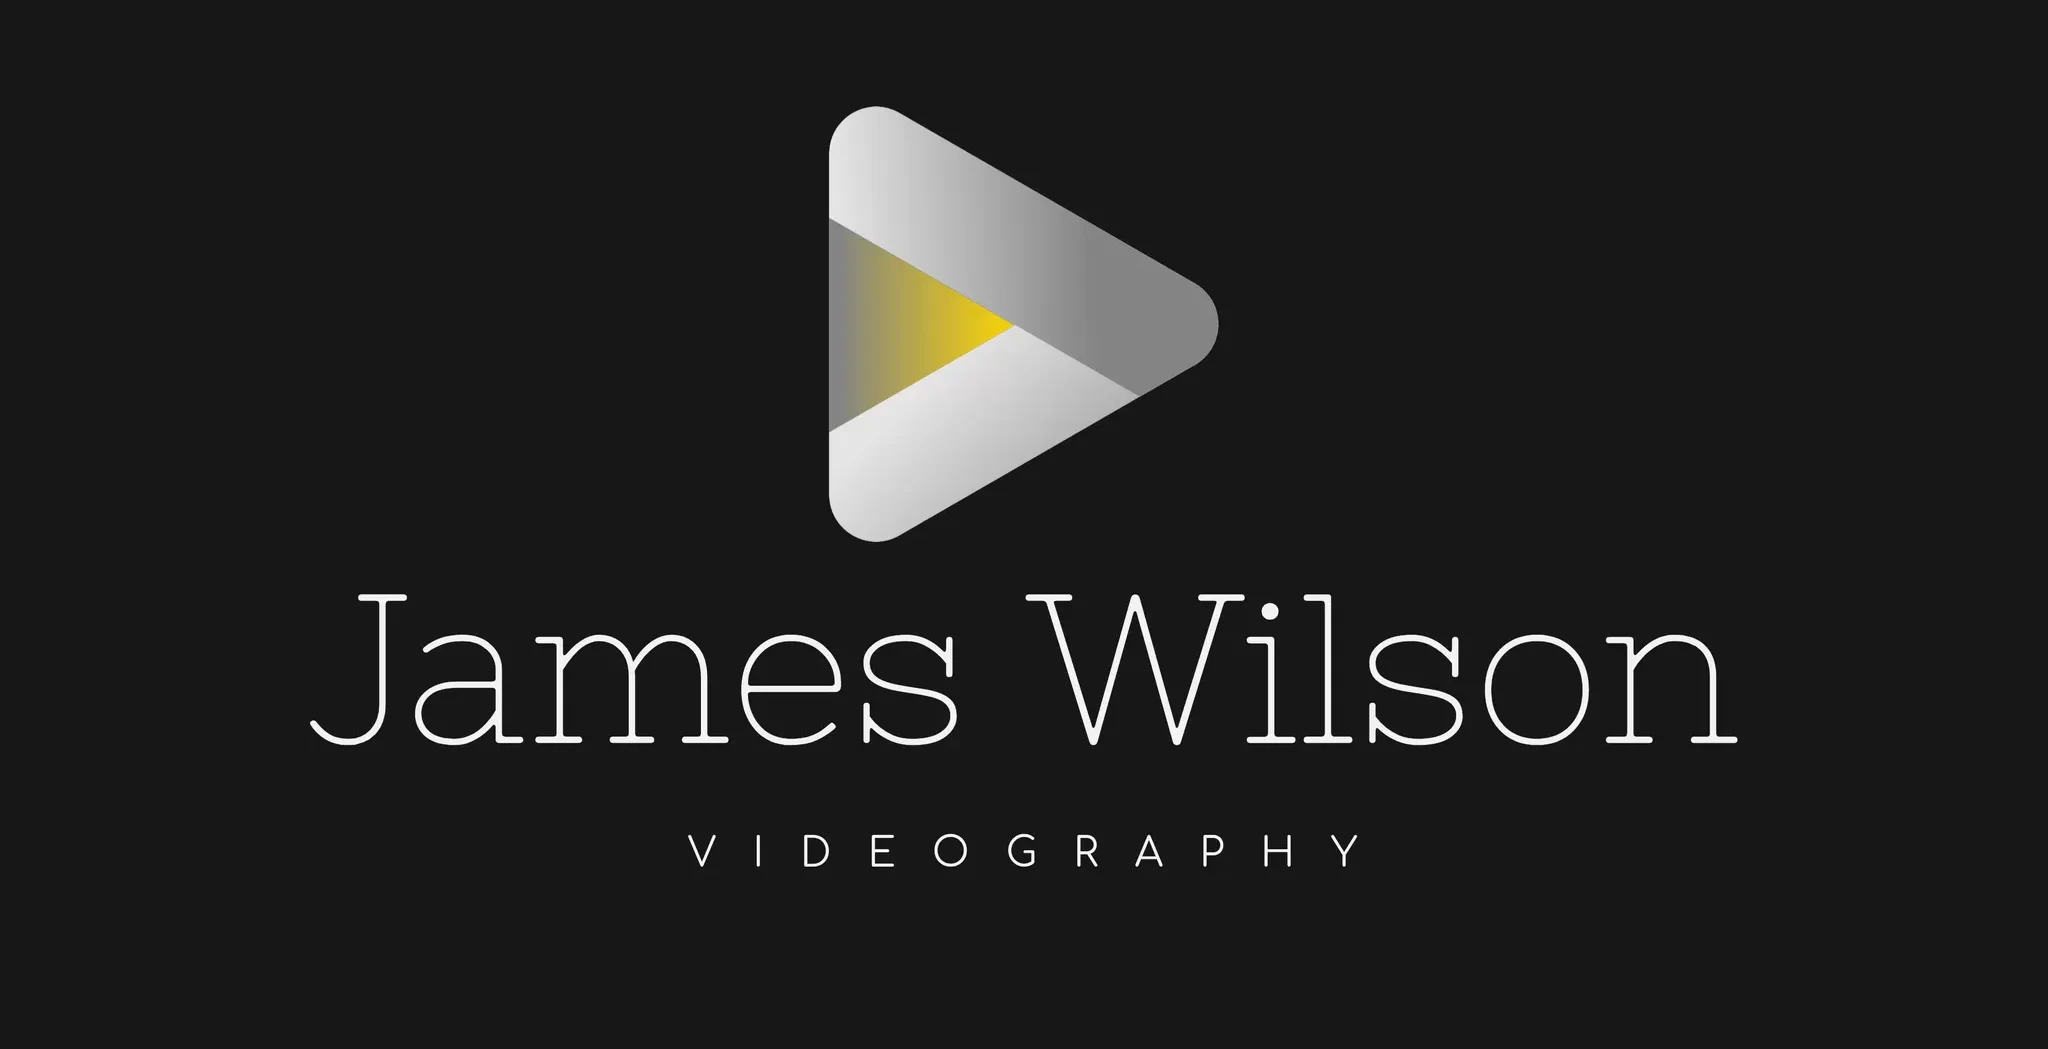  James Wilson Videography